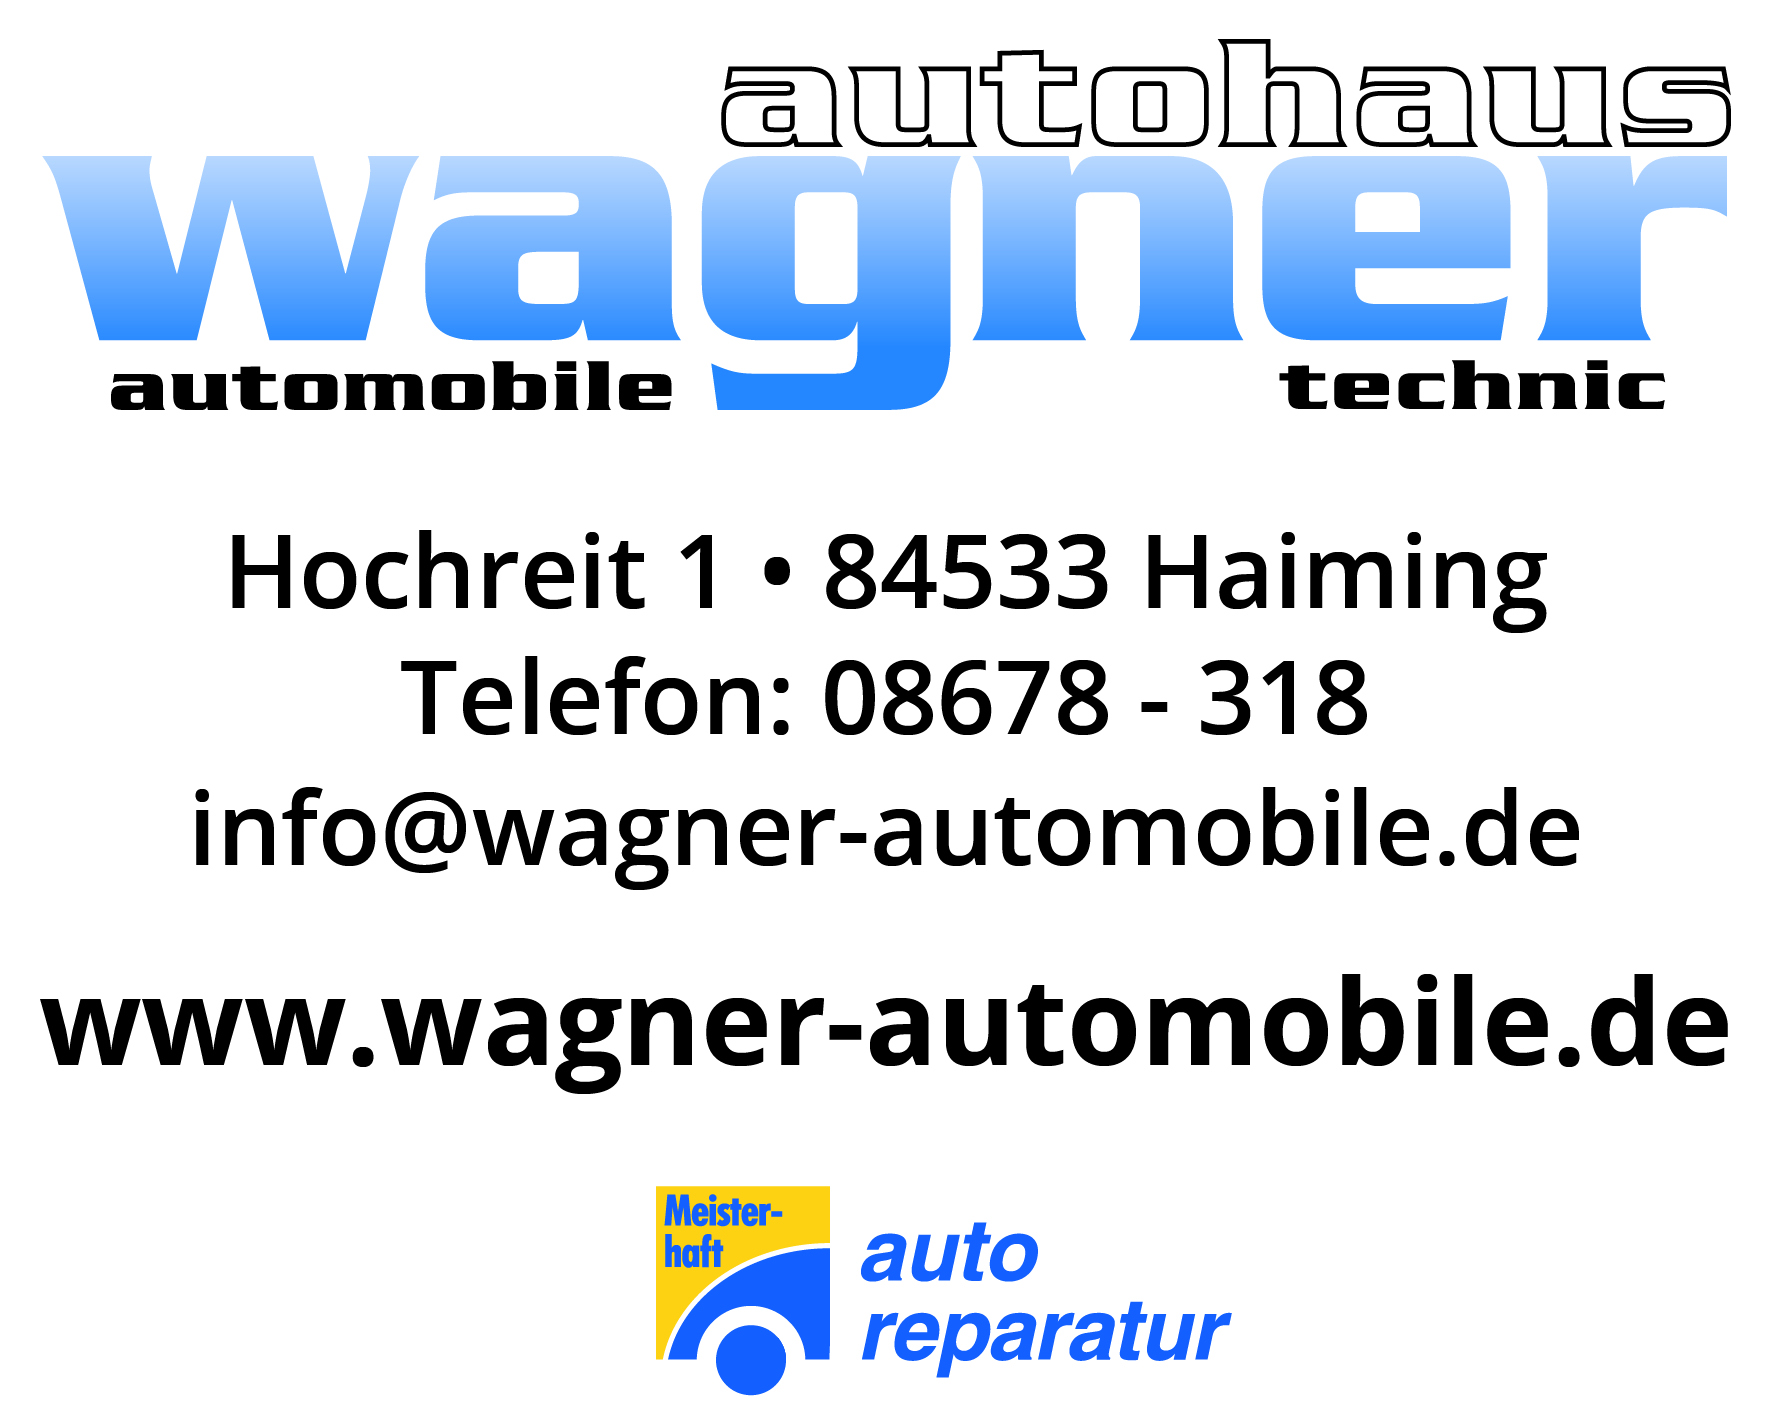 Anschrift des Autohaus Wagner